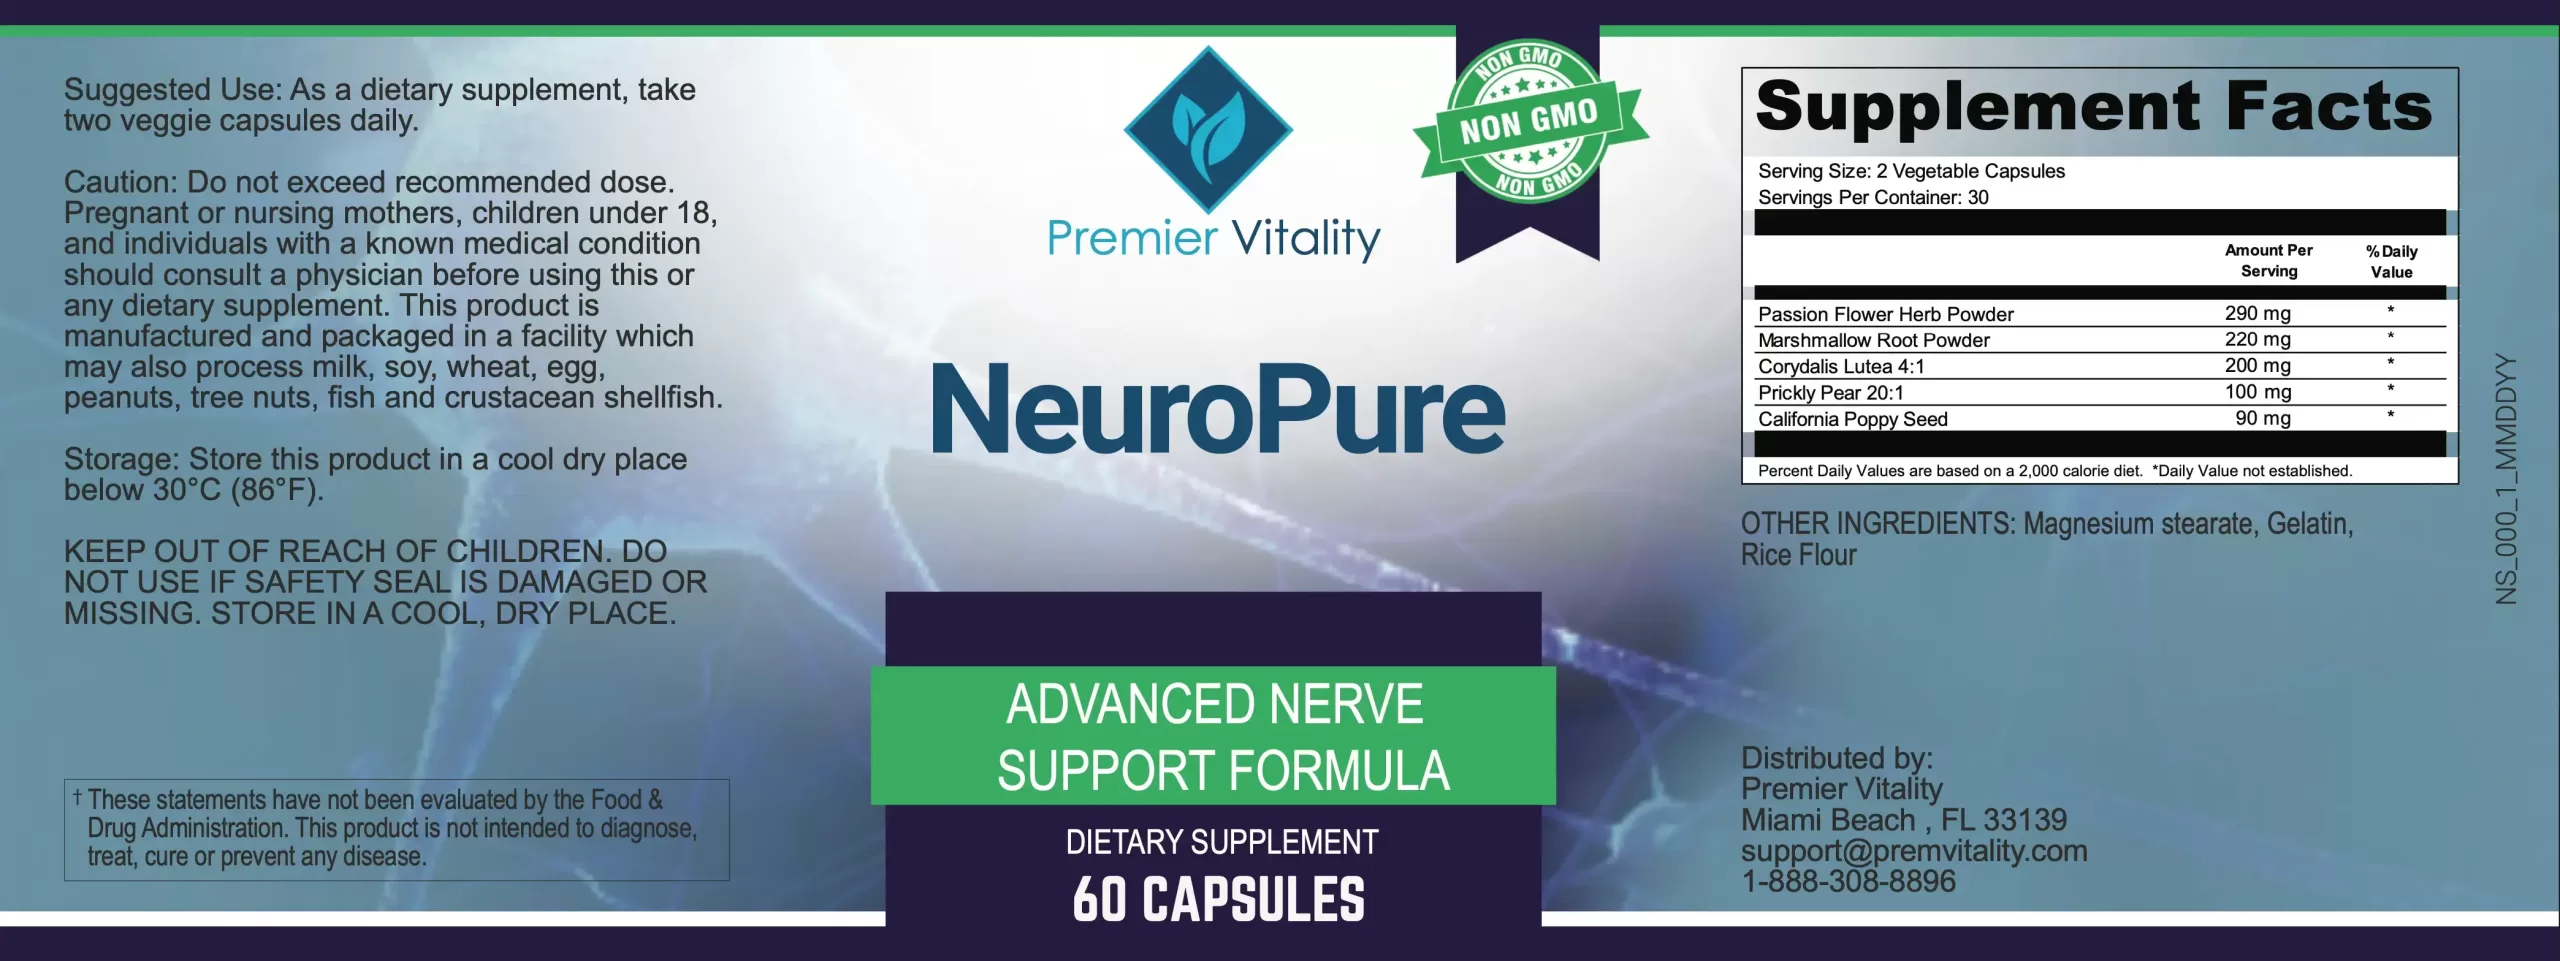 Neuropure Reviews: Neuopure Supplement Facts